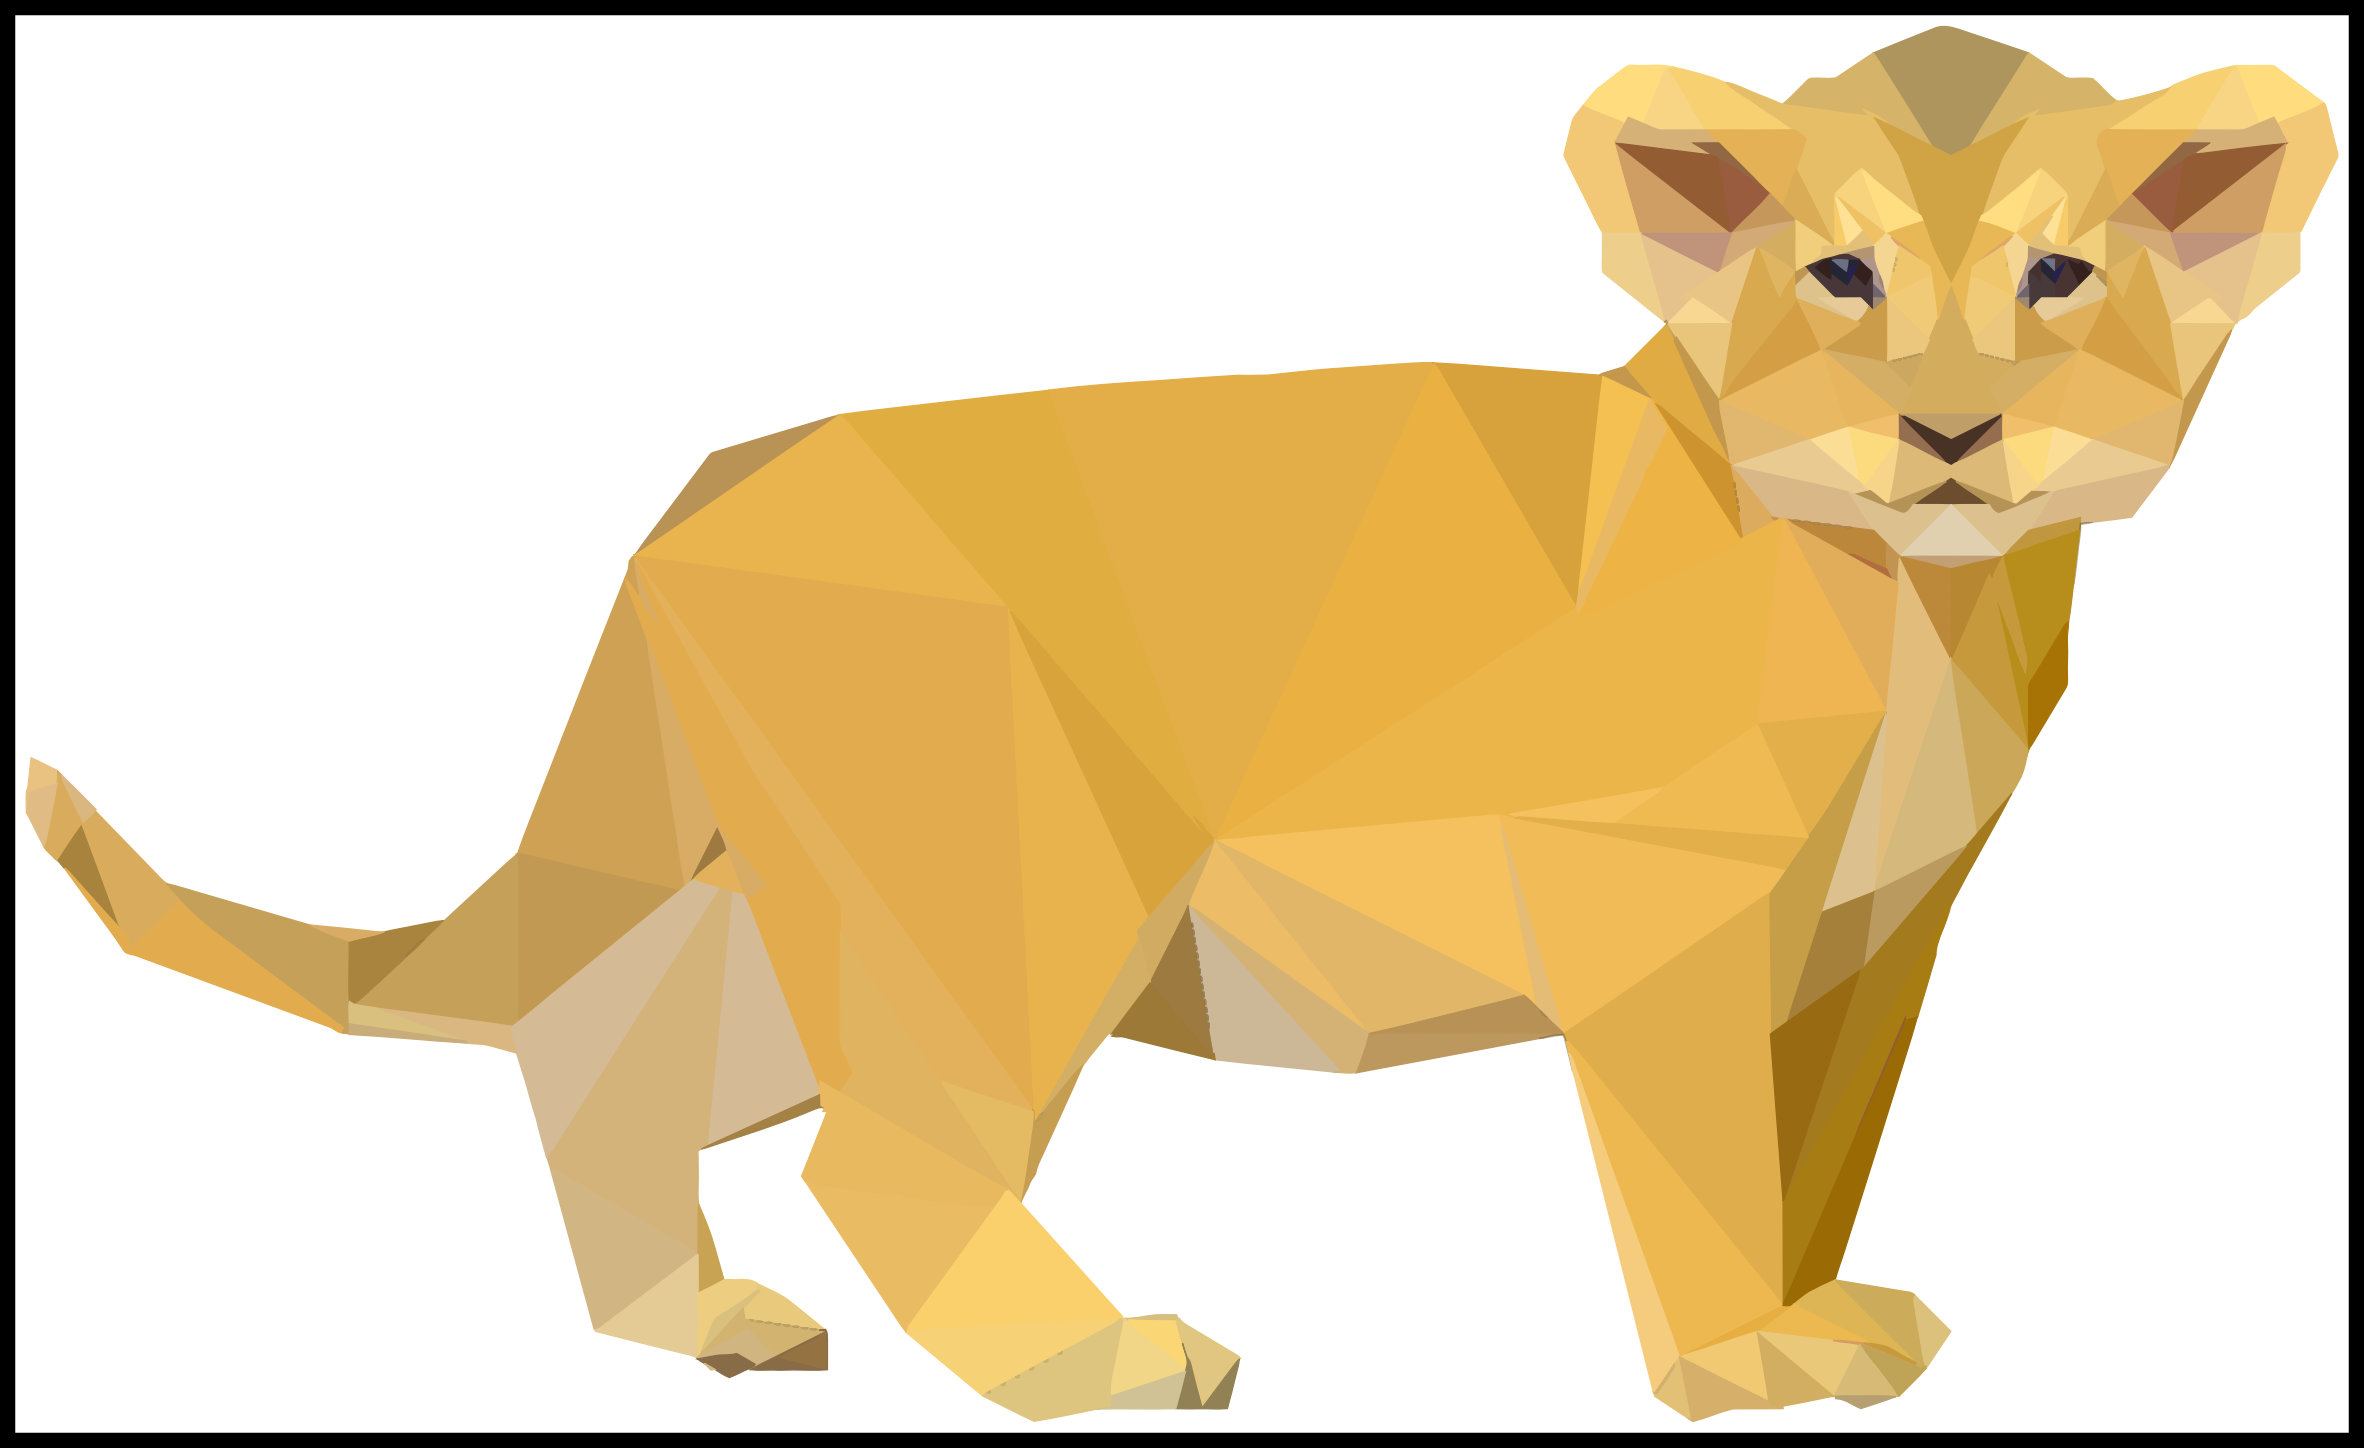 lions clipart lion cub